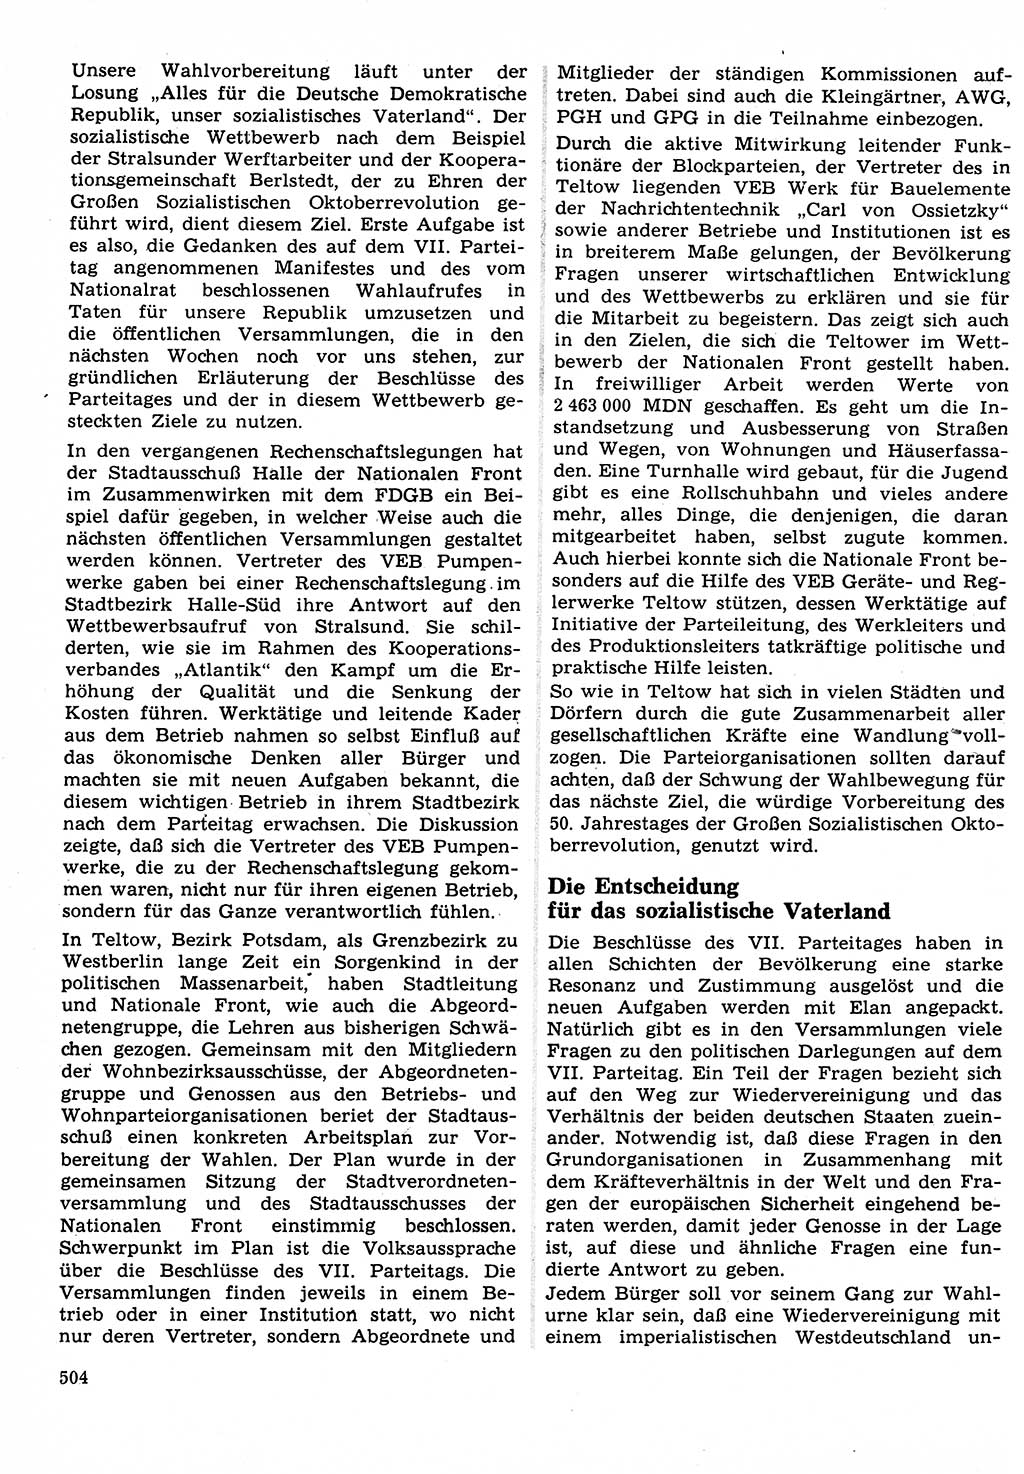 Neuer Weg (NW), Organ des Zentralkomitees (ZK) der SED (Sozialistische Einheitspartei Deutschlands) für Fragen des Parteilebens, 22. Jahrgang [Deutsche Demokratische Republik (DDR)] 1967, Seite 504 (NW ZK SED DDR 1967, S. 504)